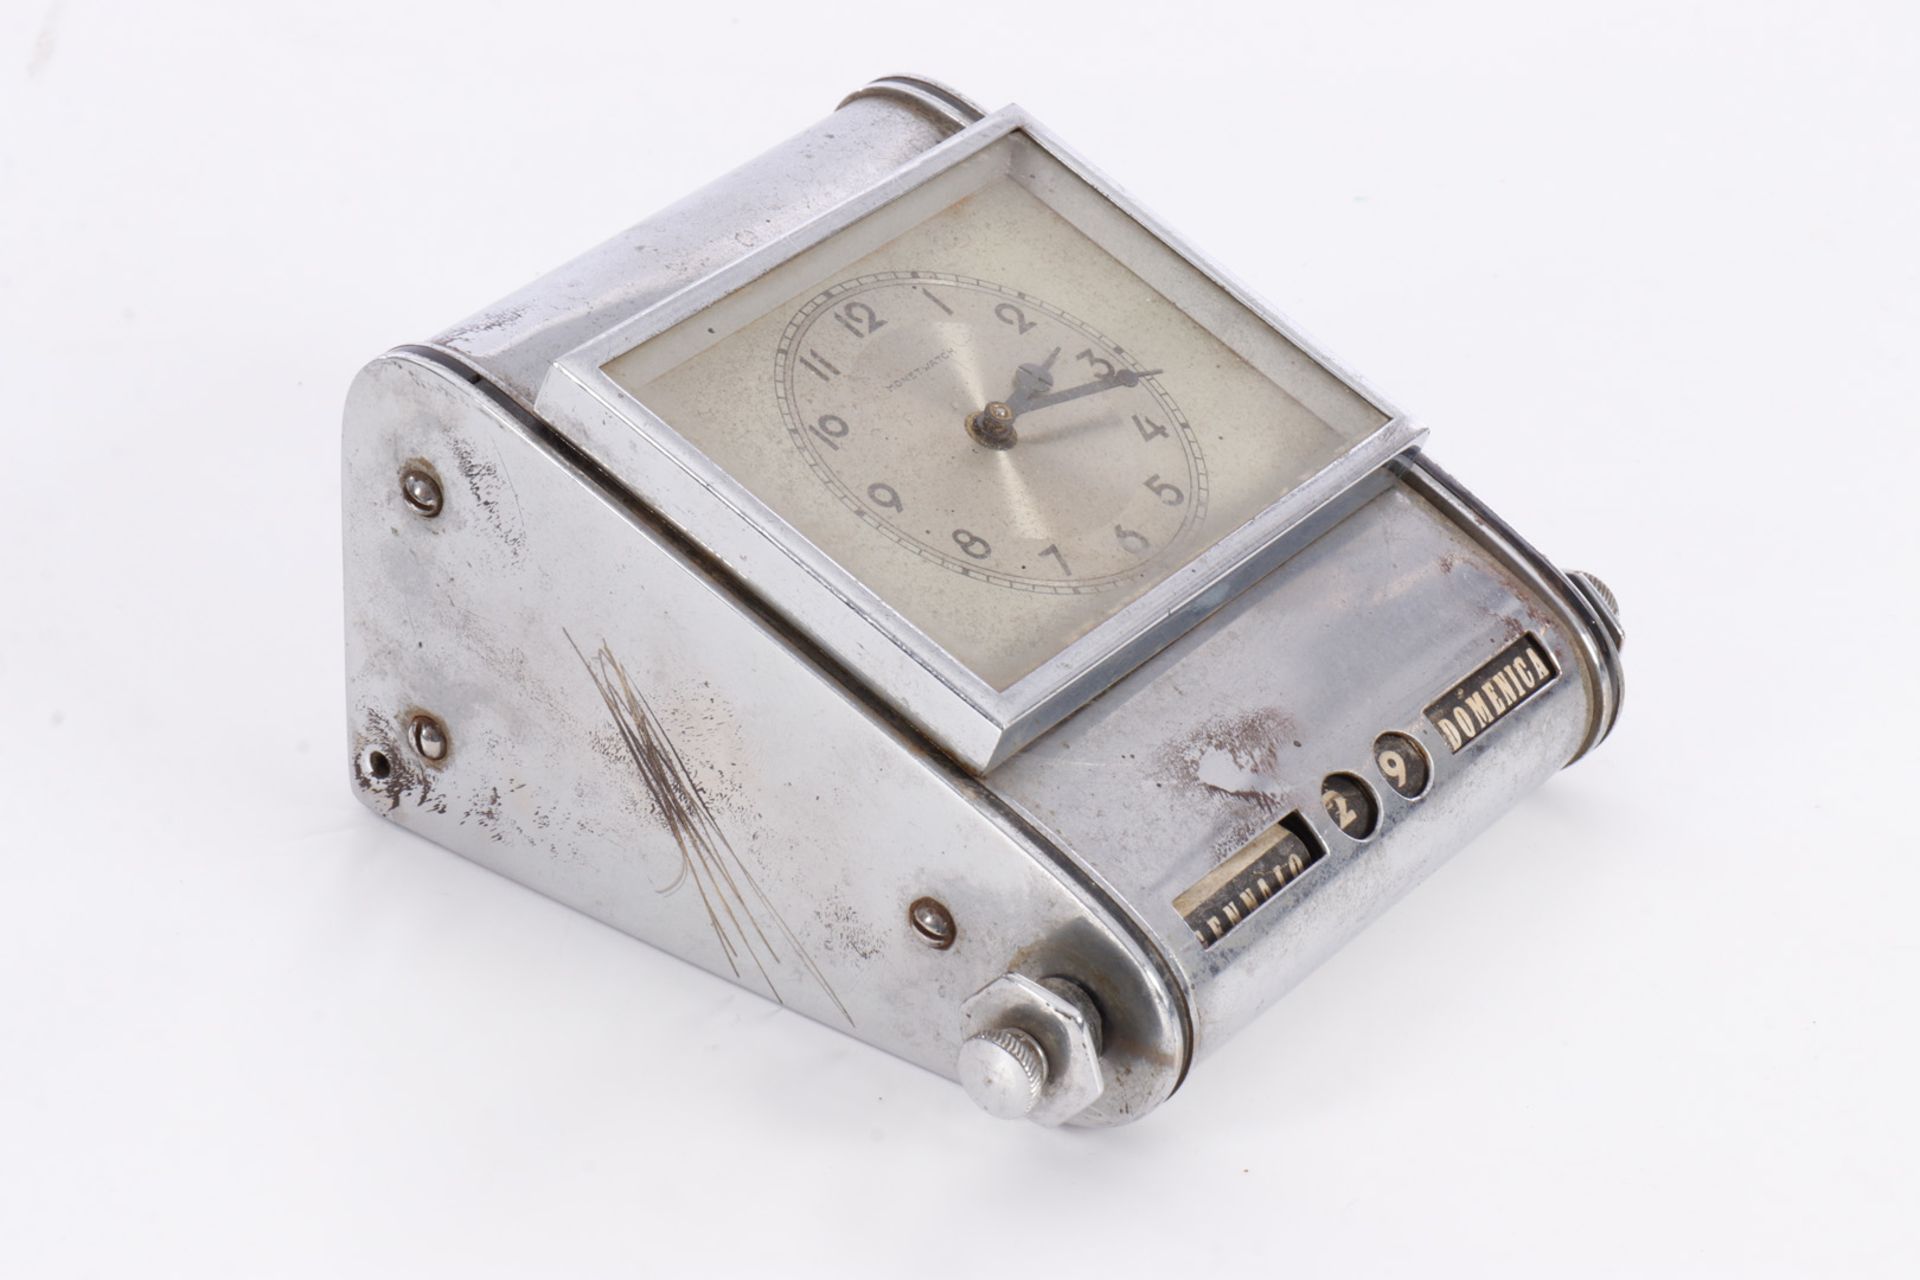 Schreibtischuhr Monet Watch, verchromt, mit Drehkalender, Gebrauchsspuren, Werk muss überholt - Image 4 of 4